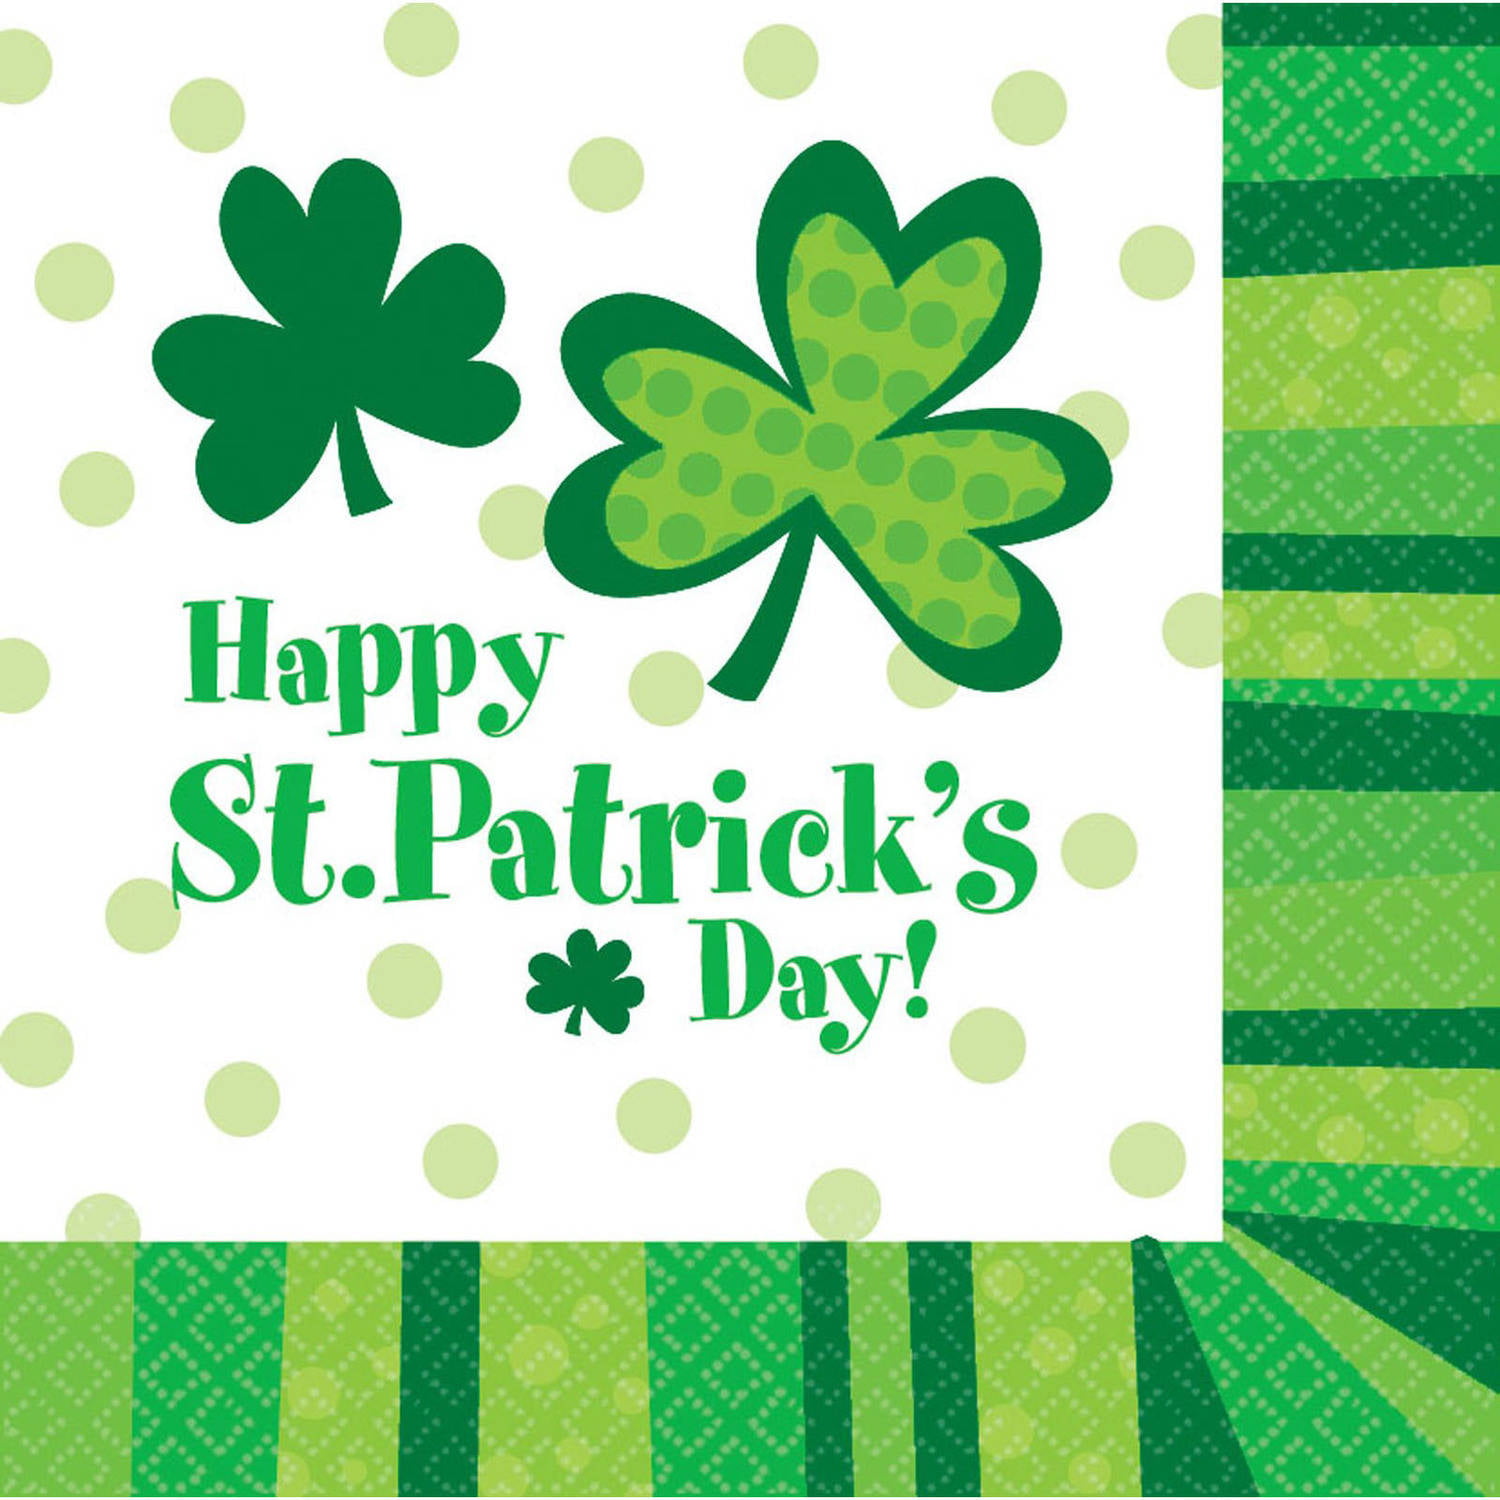 Happy patrick s day. St Patrick's Day. Happy St Patrick's Day ответы. Ирландский зеленый цвет.